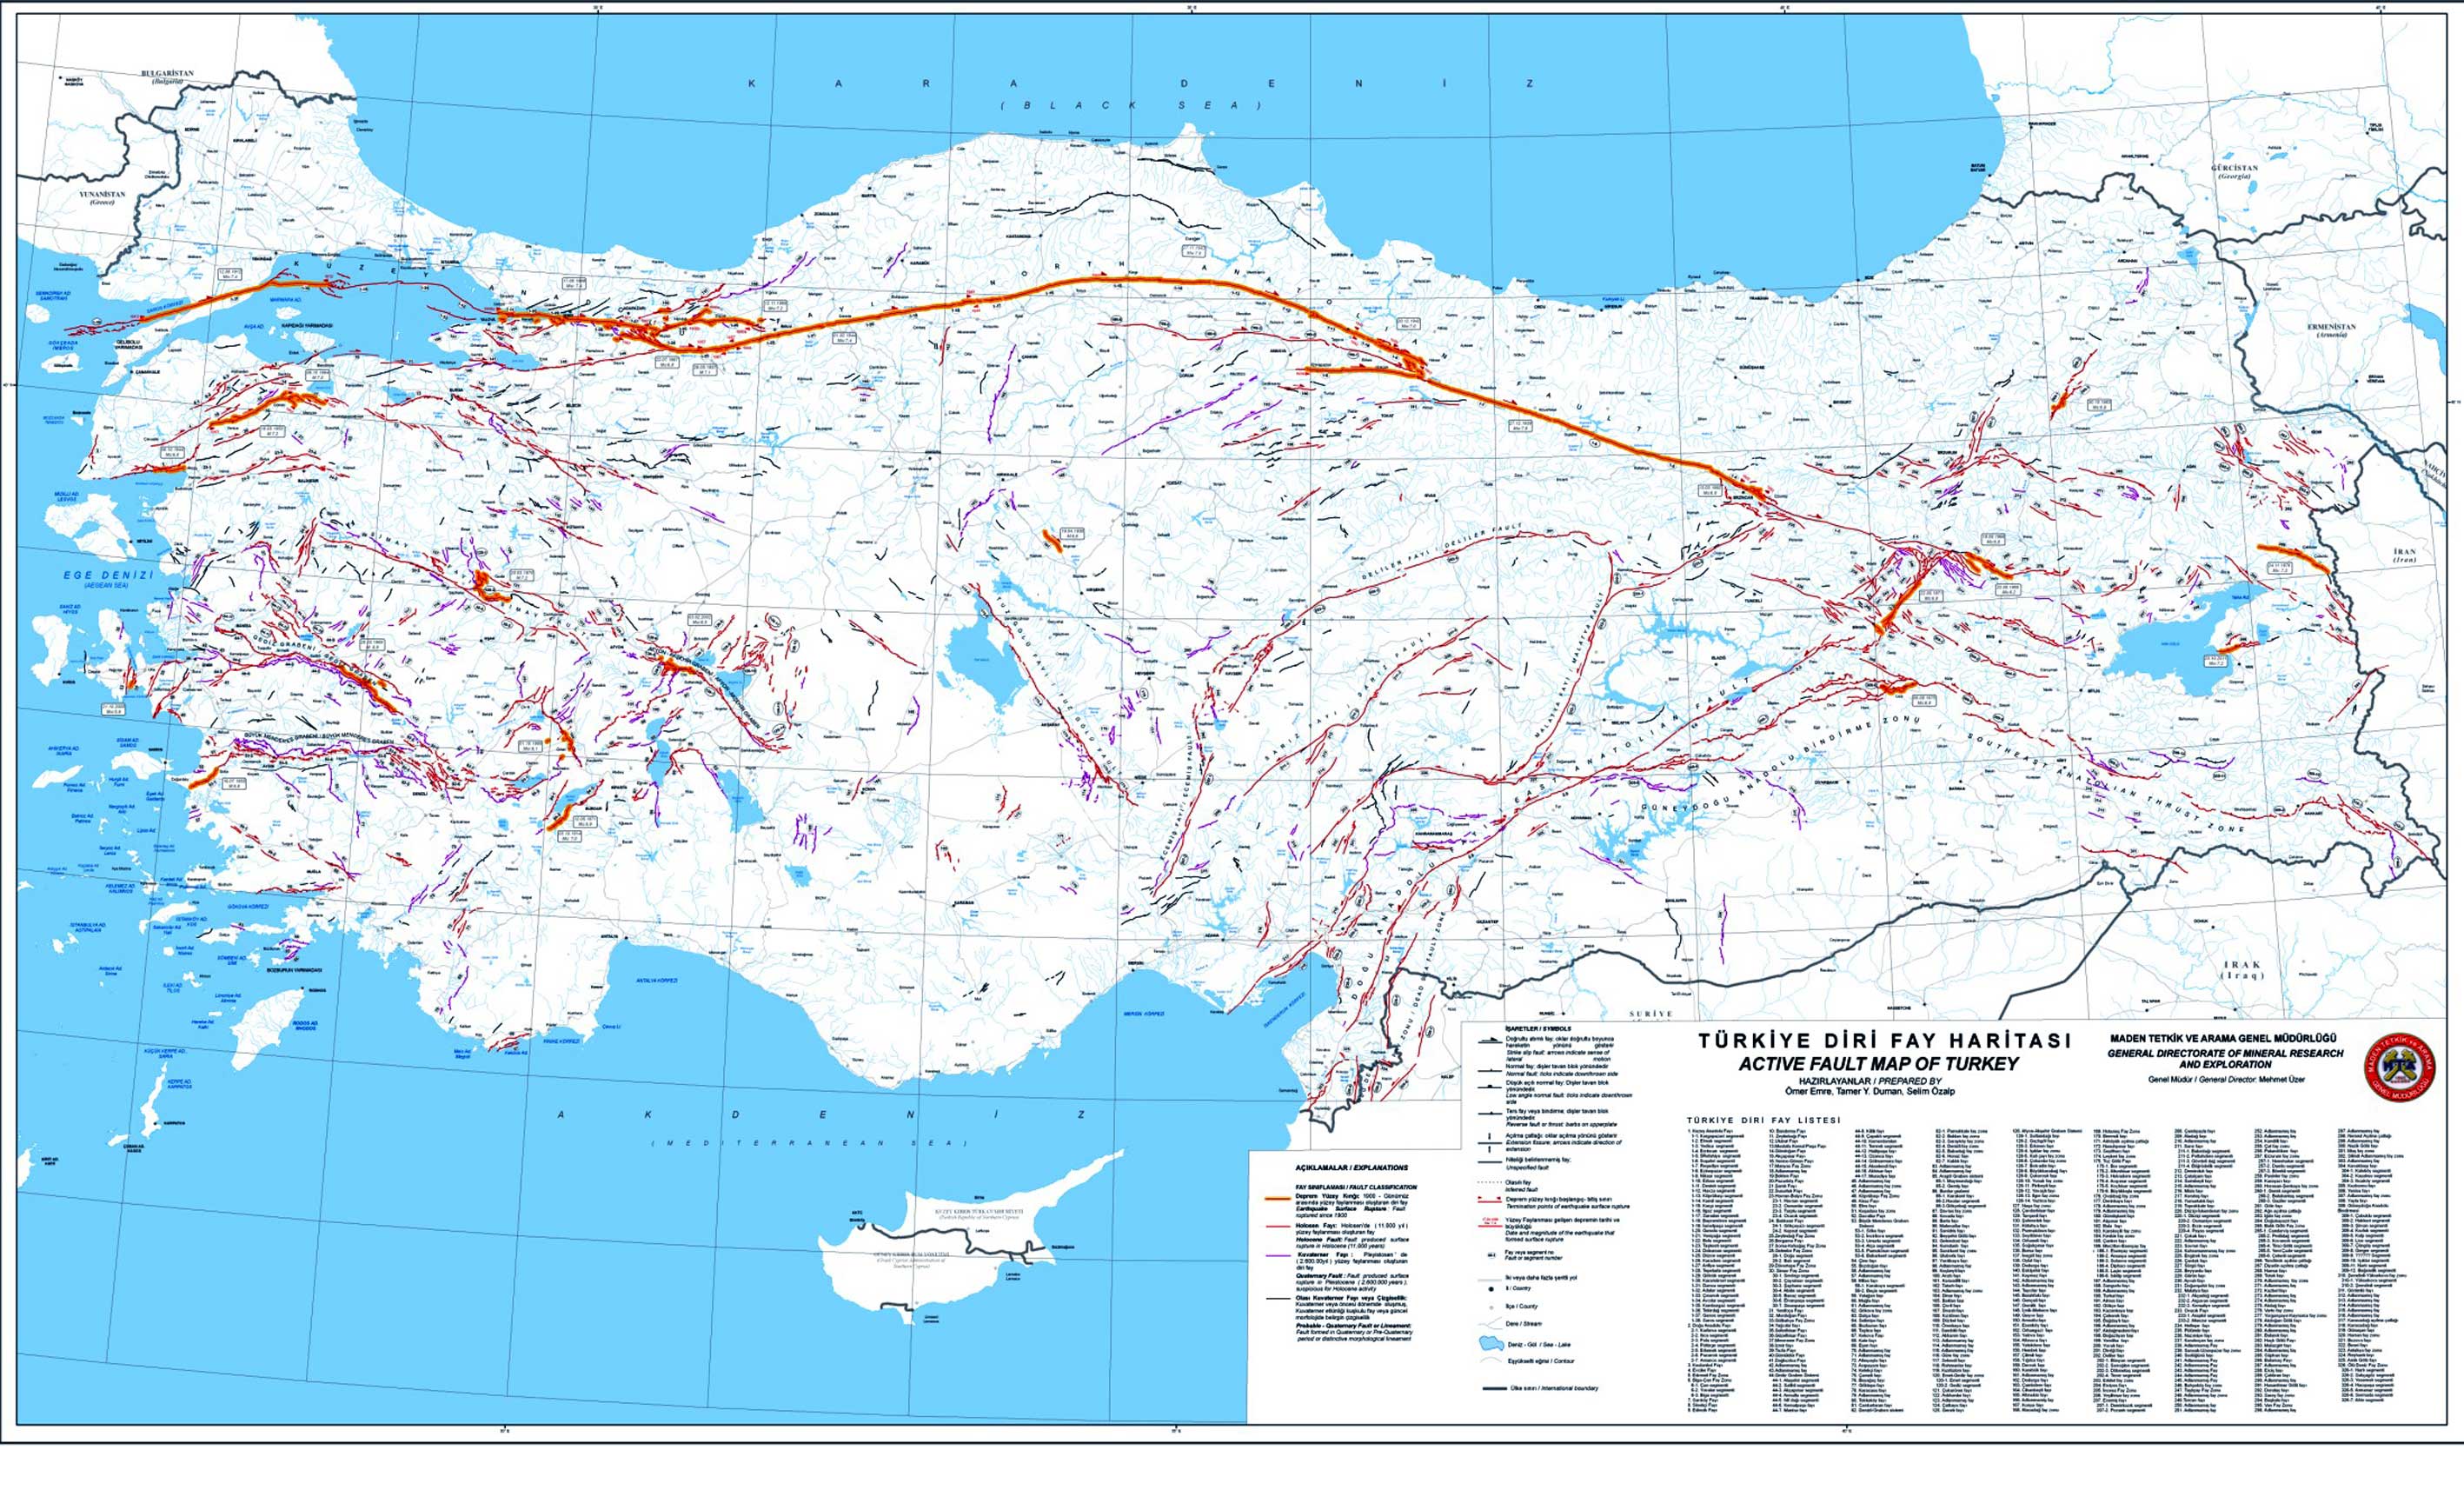 Yeni Trkiye Diri Fay Hatt Deprem Haritas